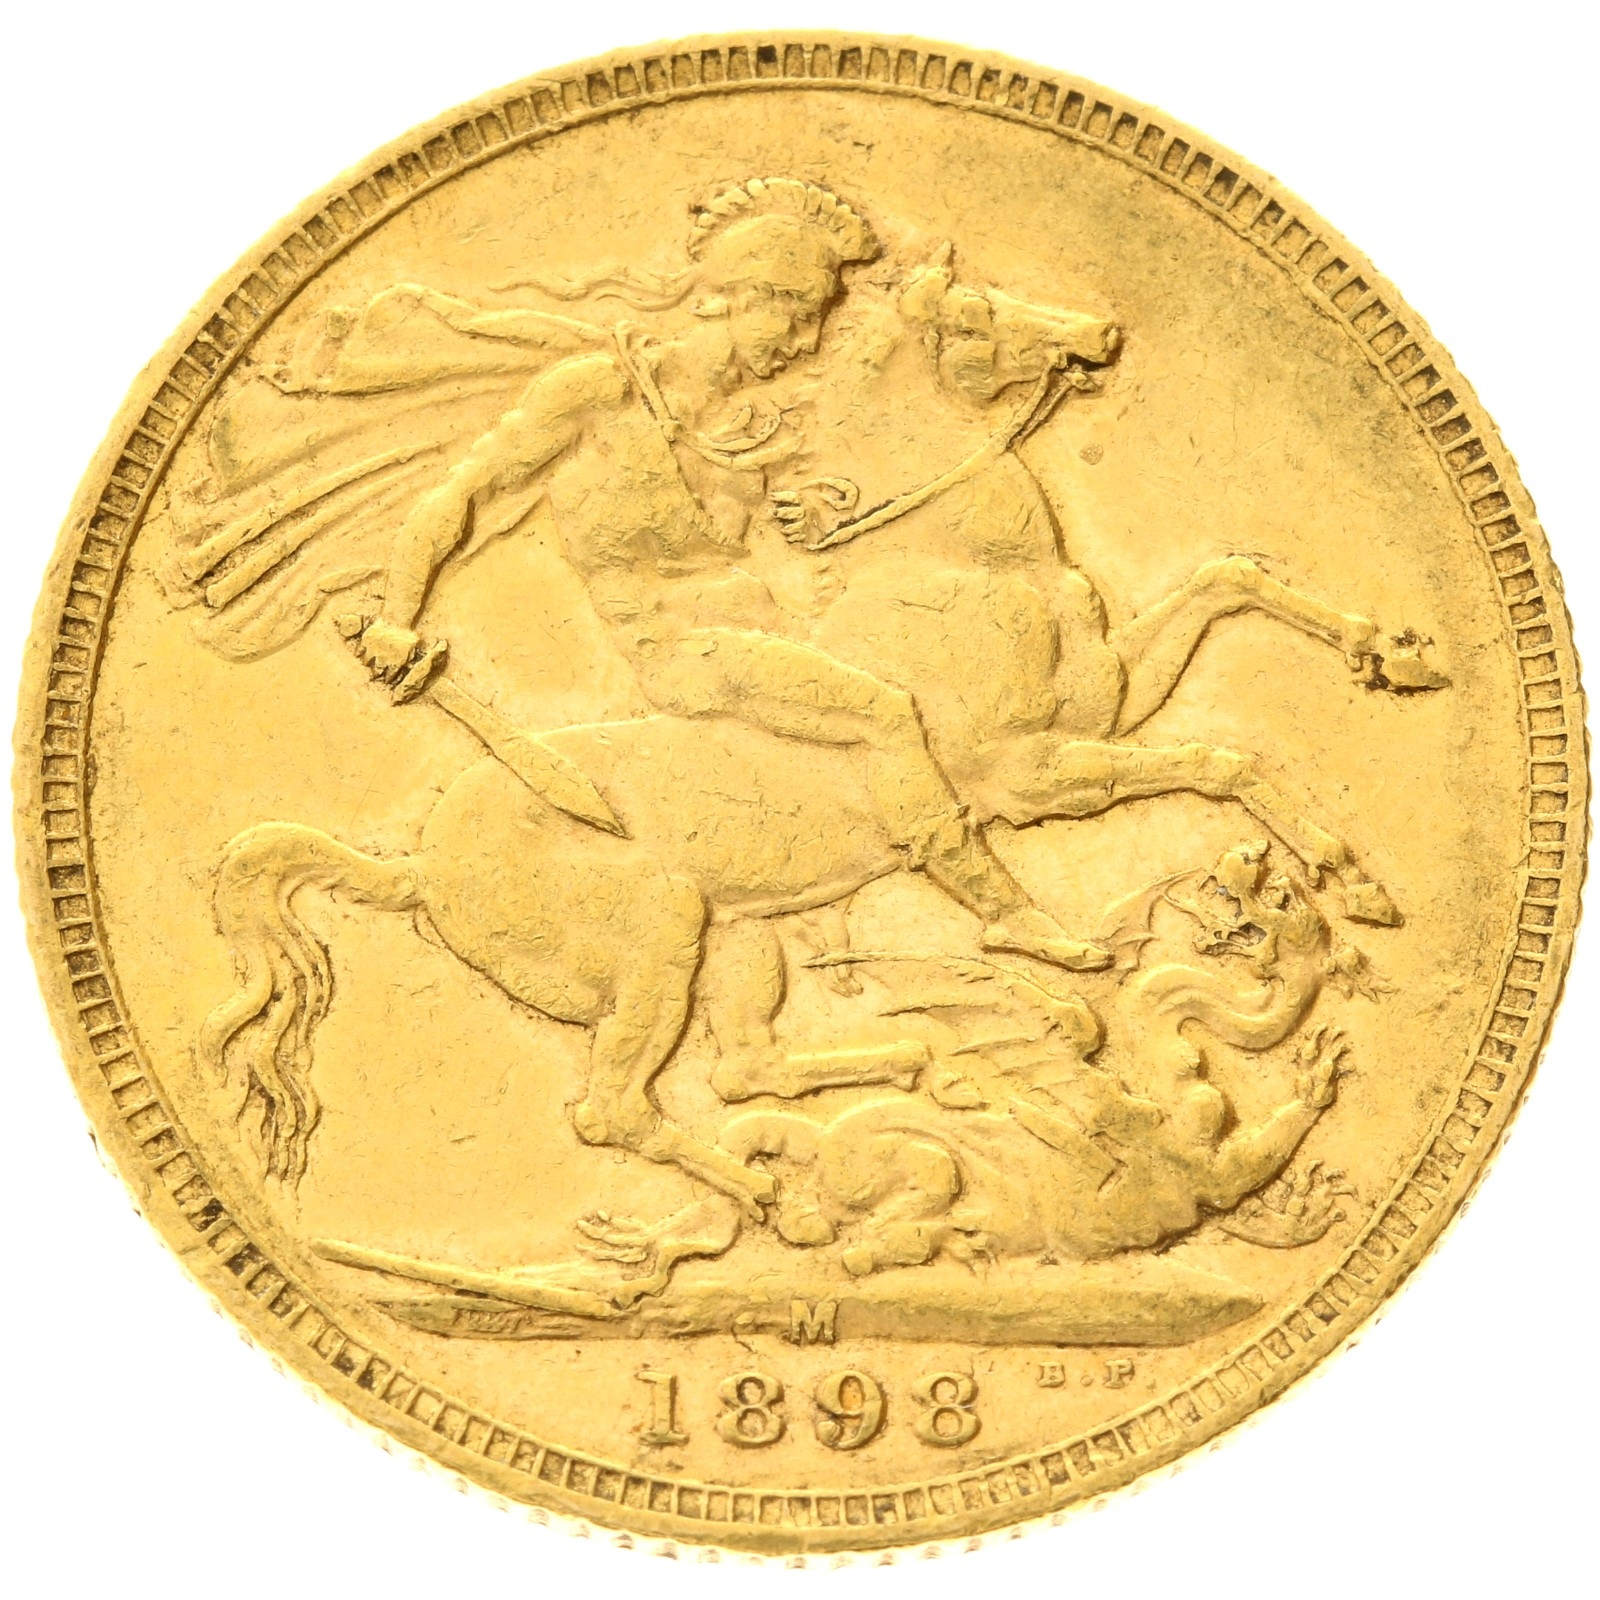 Australia - 1 sovereign - 1898 - M - Victoria